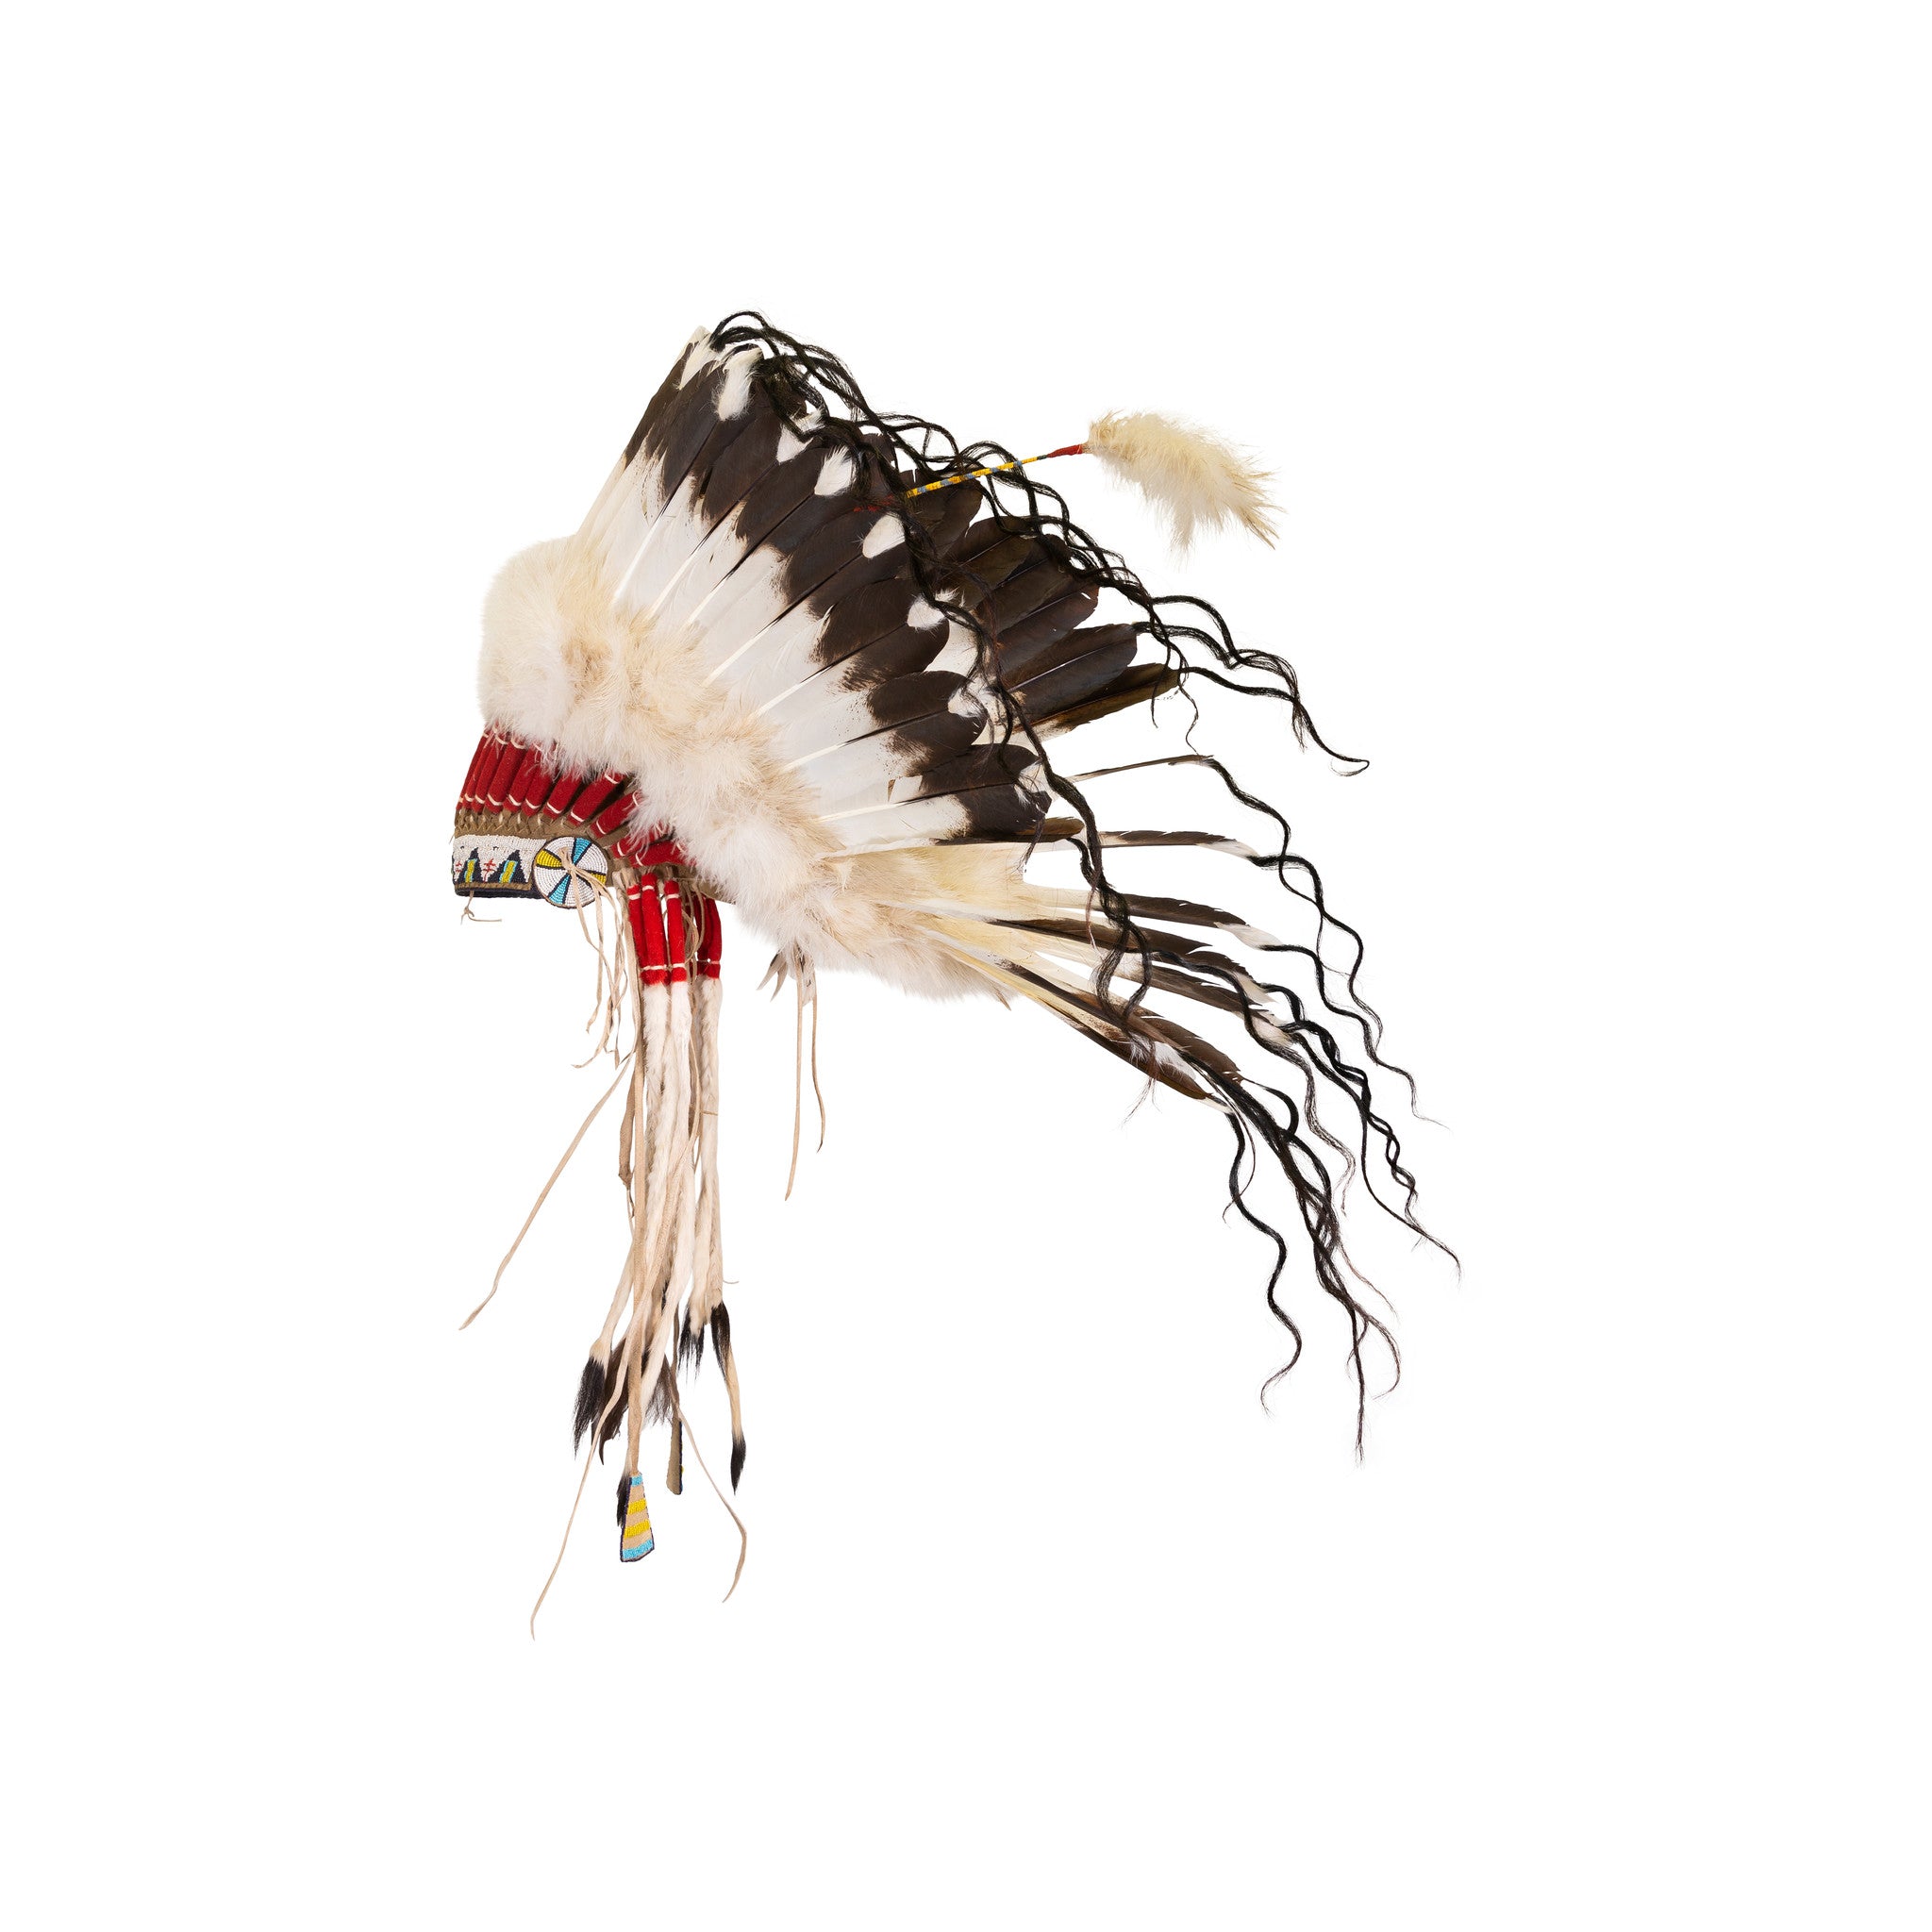 Lakota Sioux Style Headdress